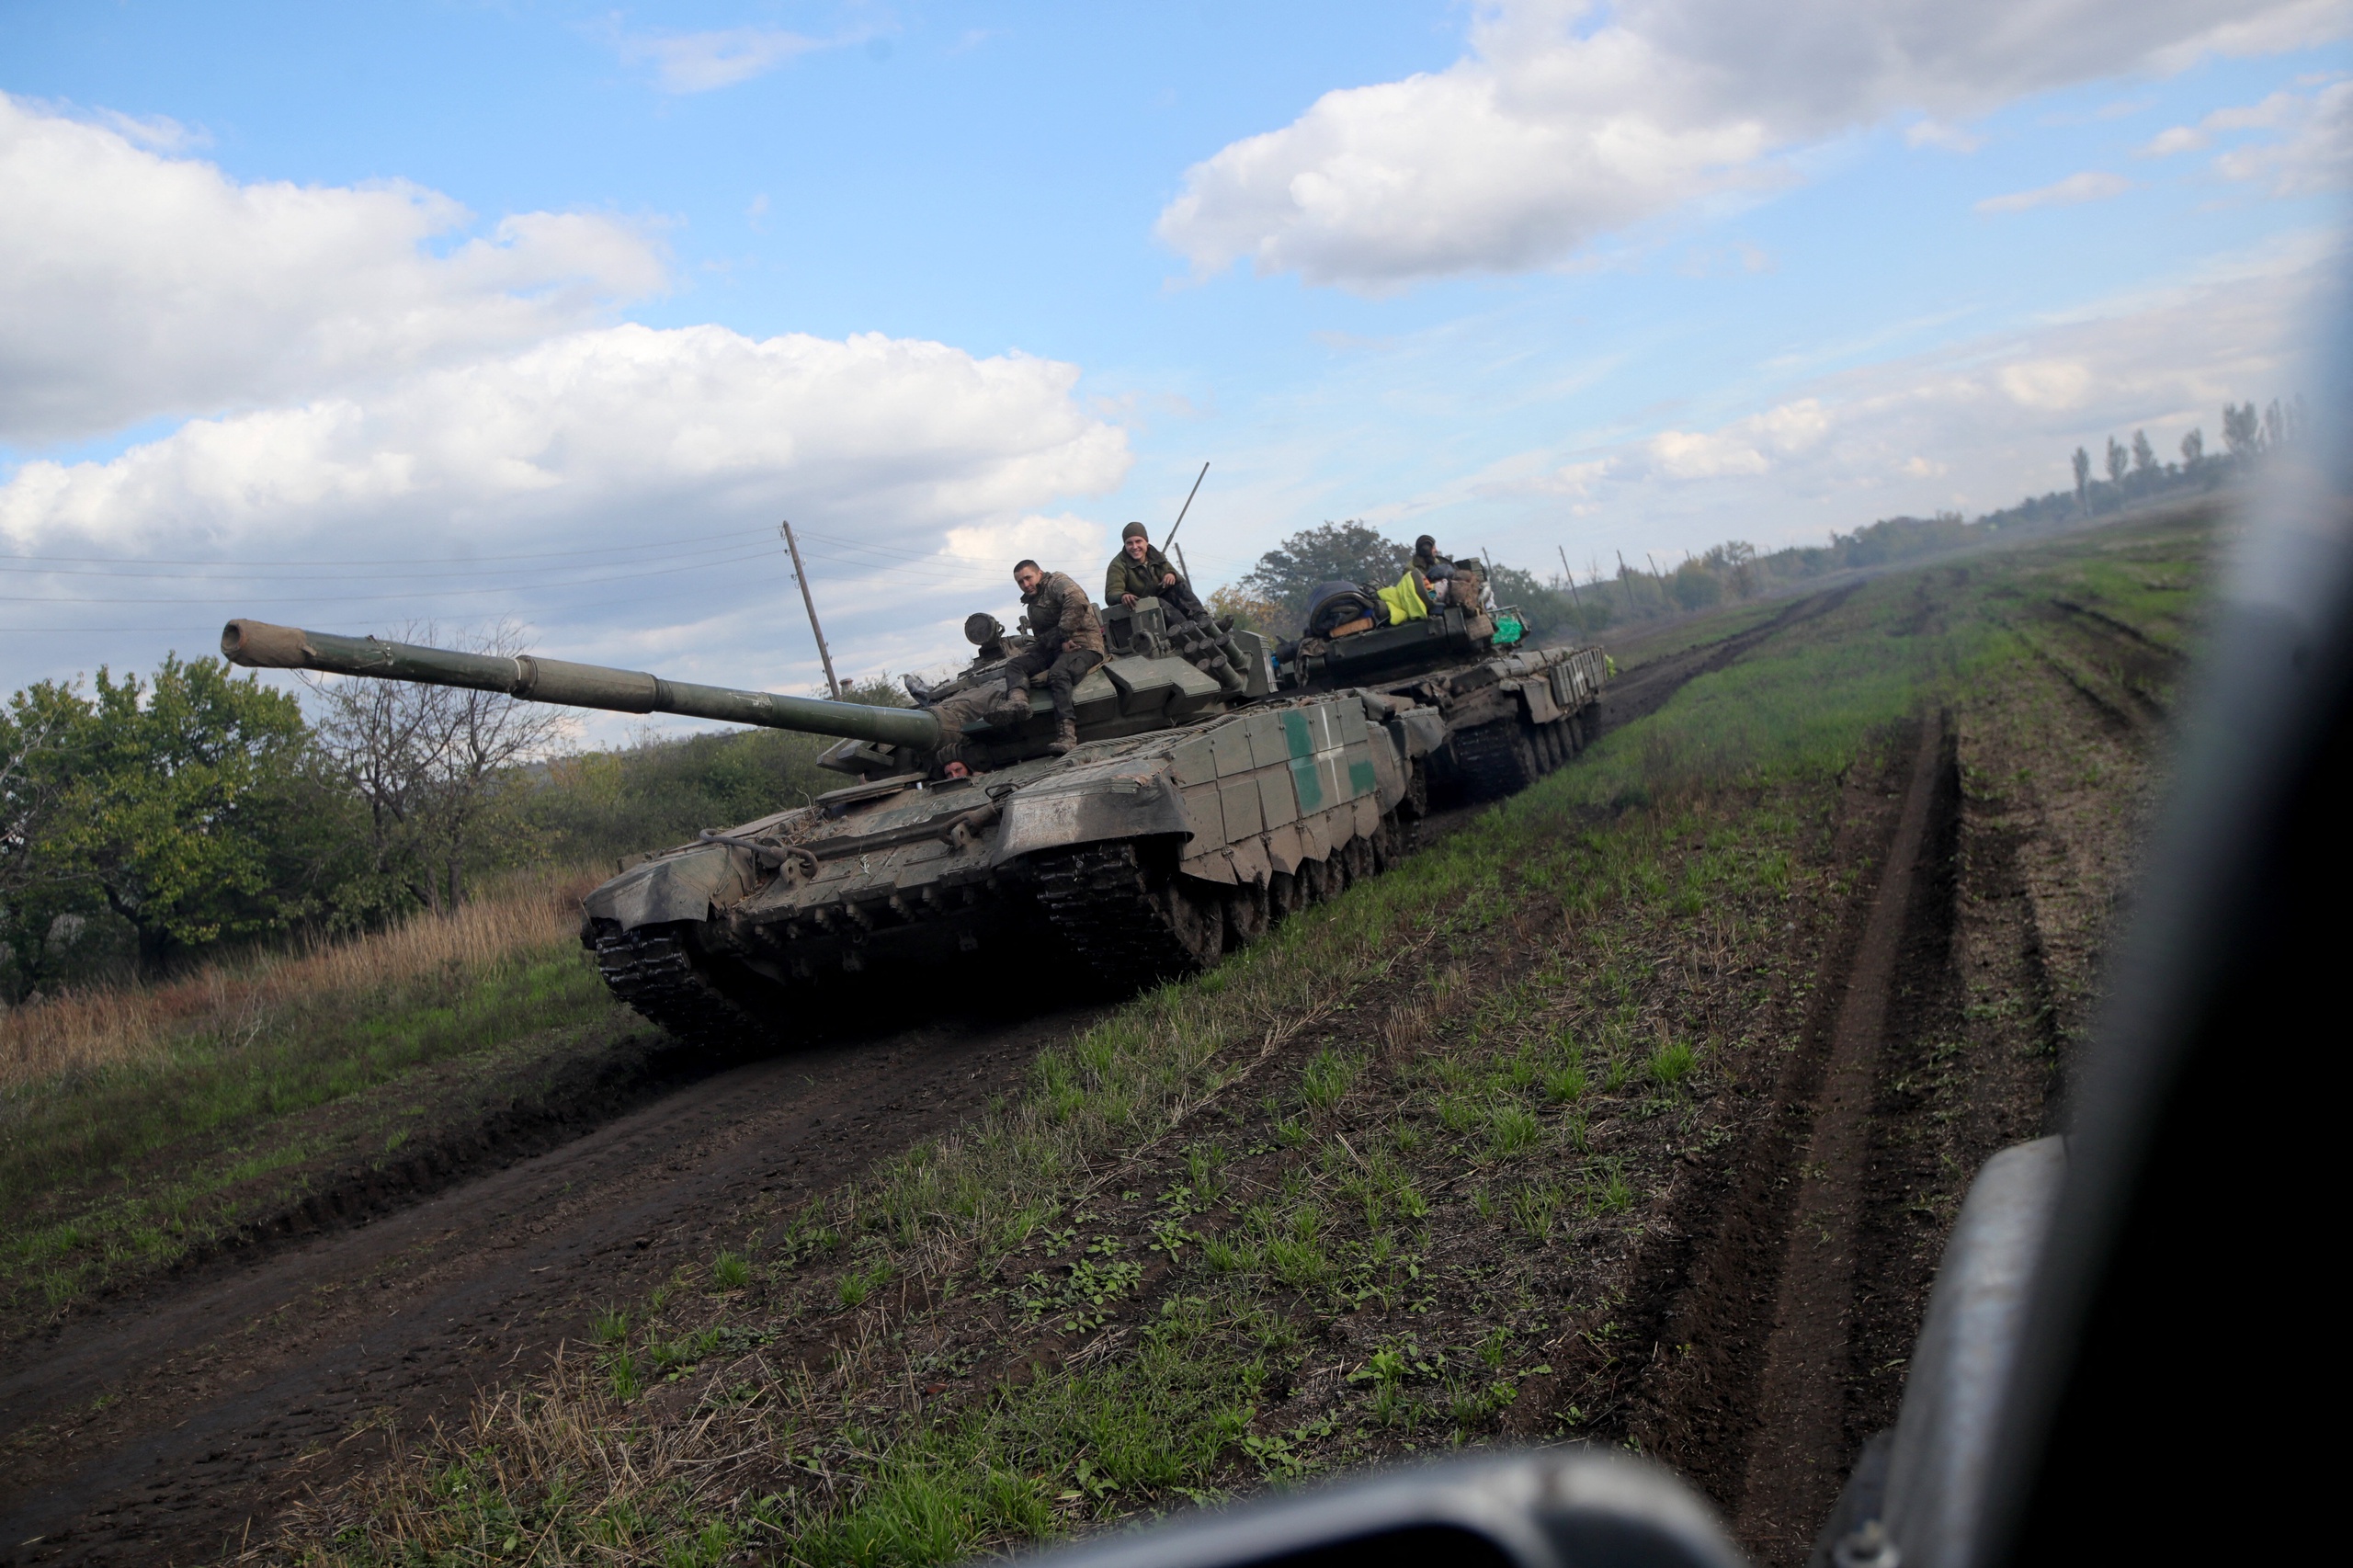 Oekraïense tanks in actie. Zelenski kwam direct vanuit Bahmoet, de zwaarste frontplek. Bahmoet en Washington zijn de twee plekken waar de oorlog wordt beslist voor Oekraïne